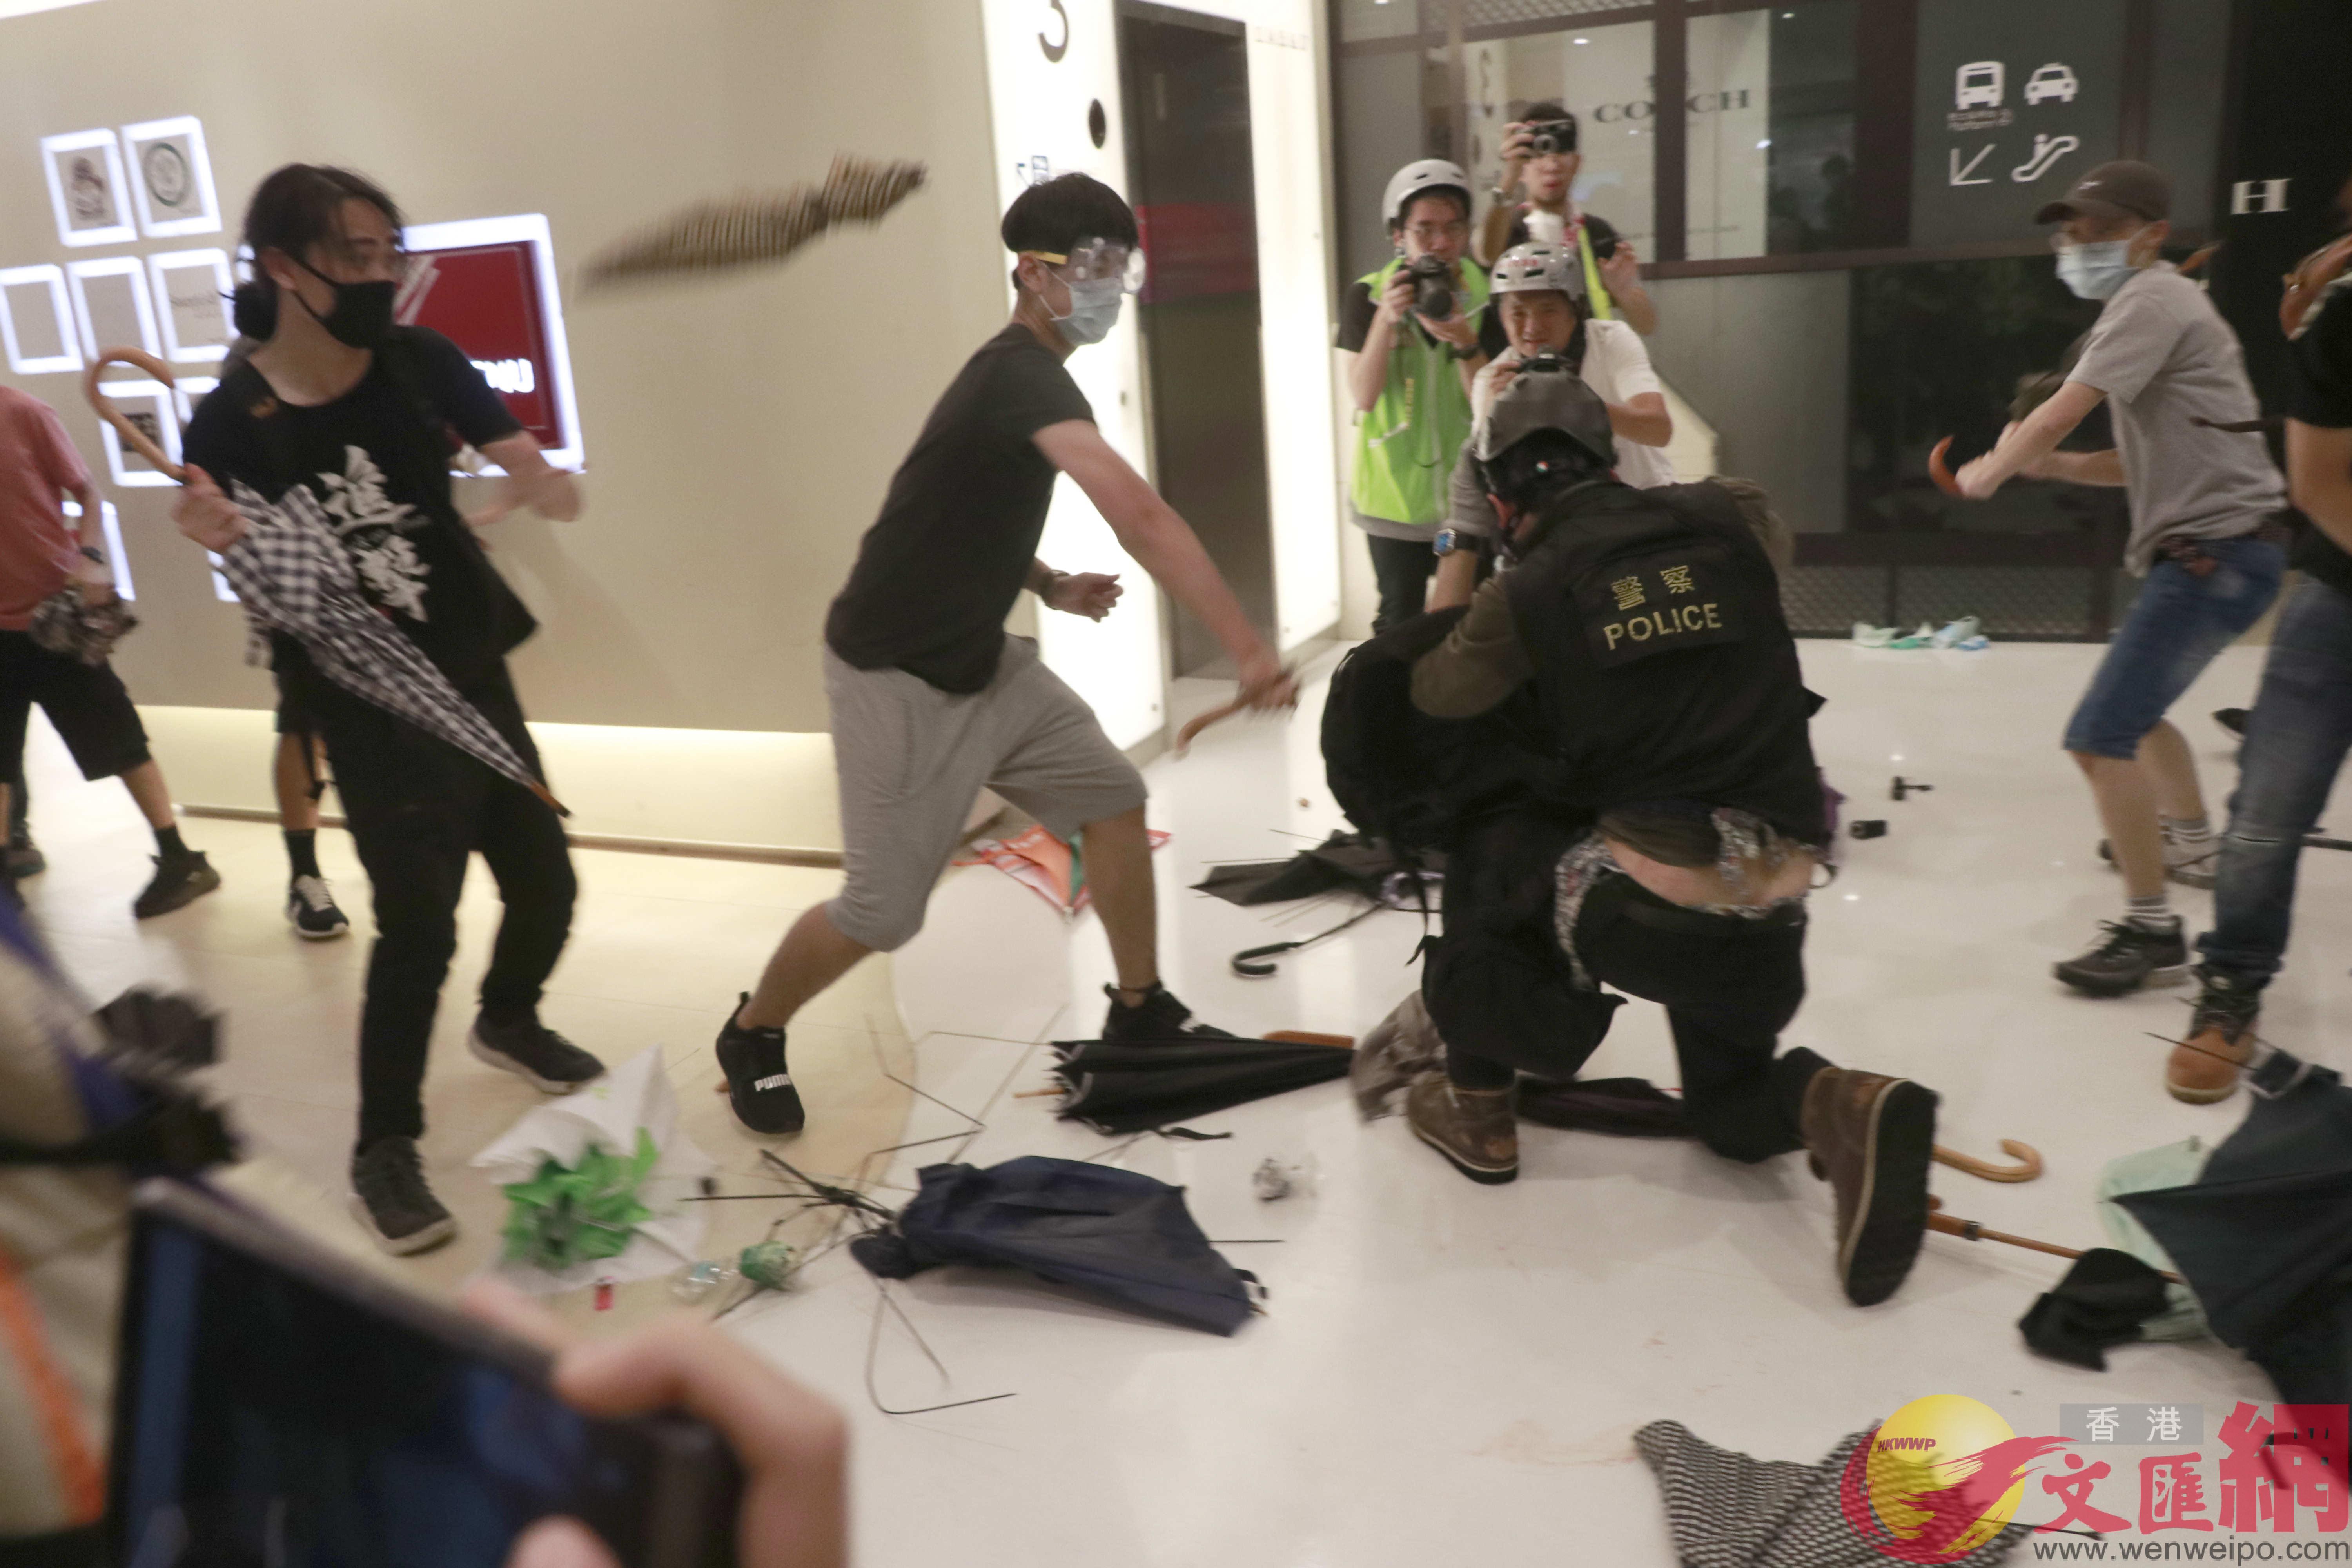 示威者在商場圍毆落單警員。香港文匯報記者攝 